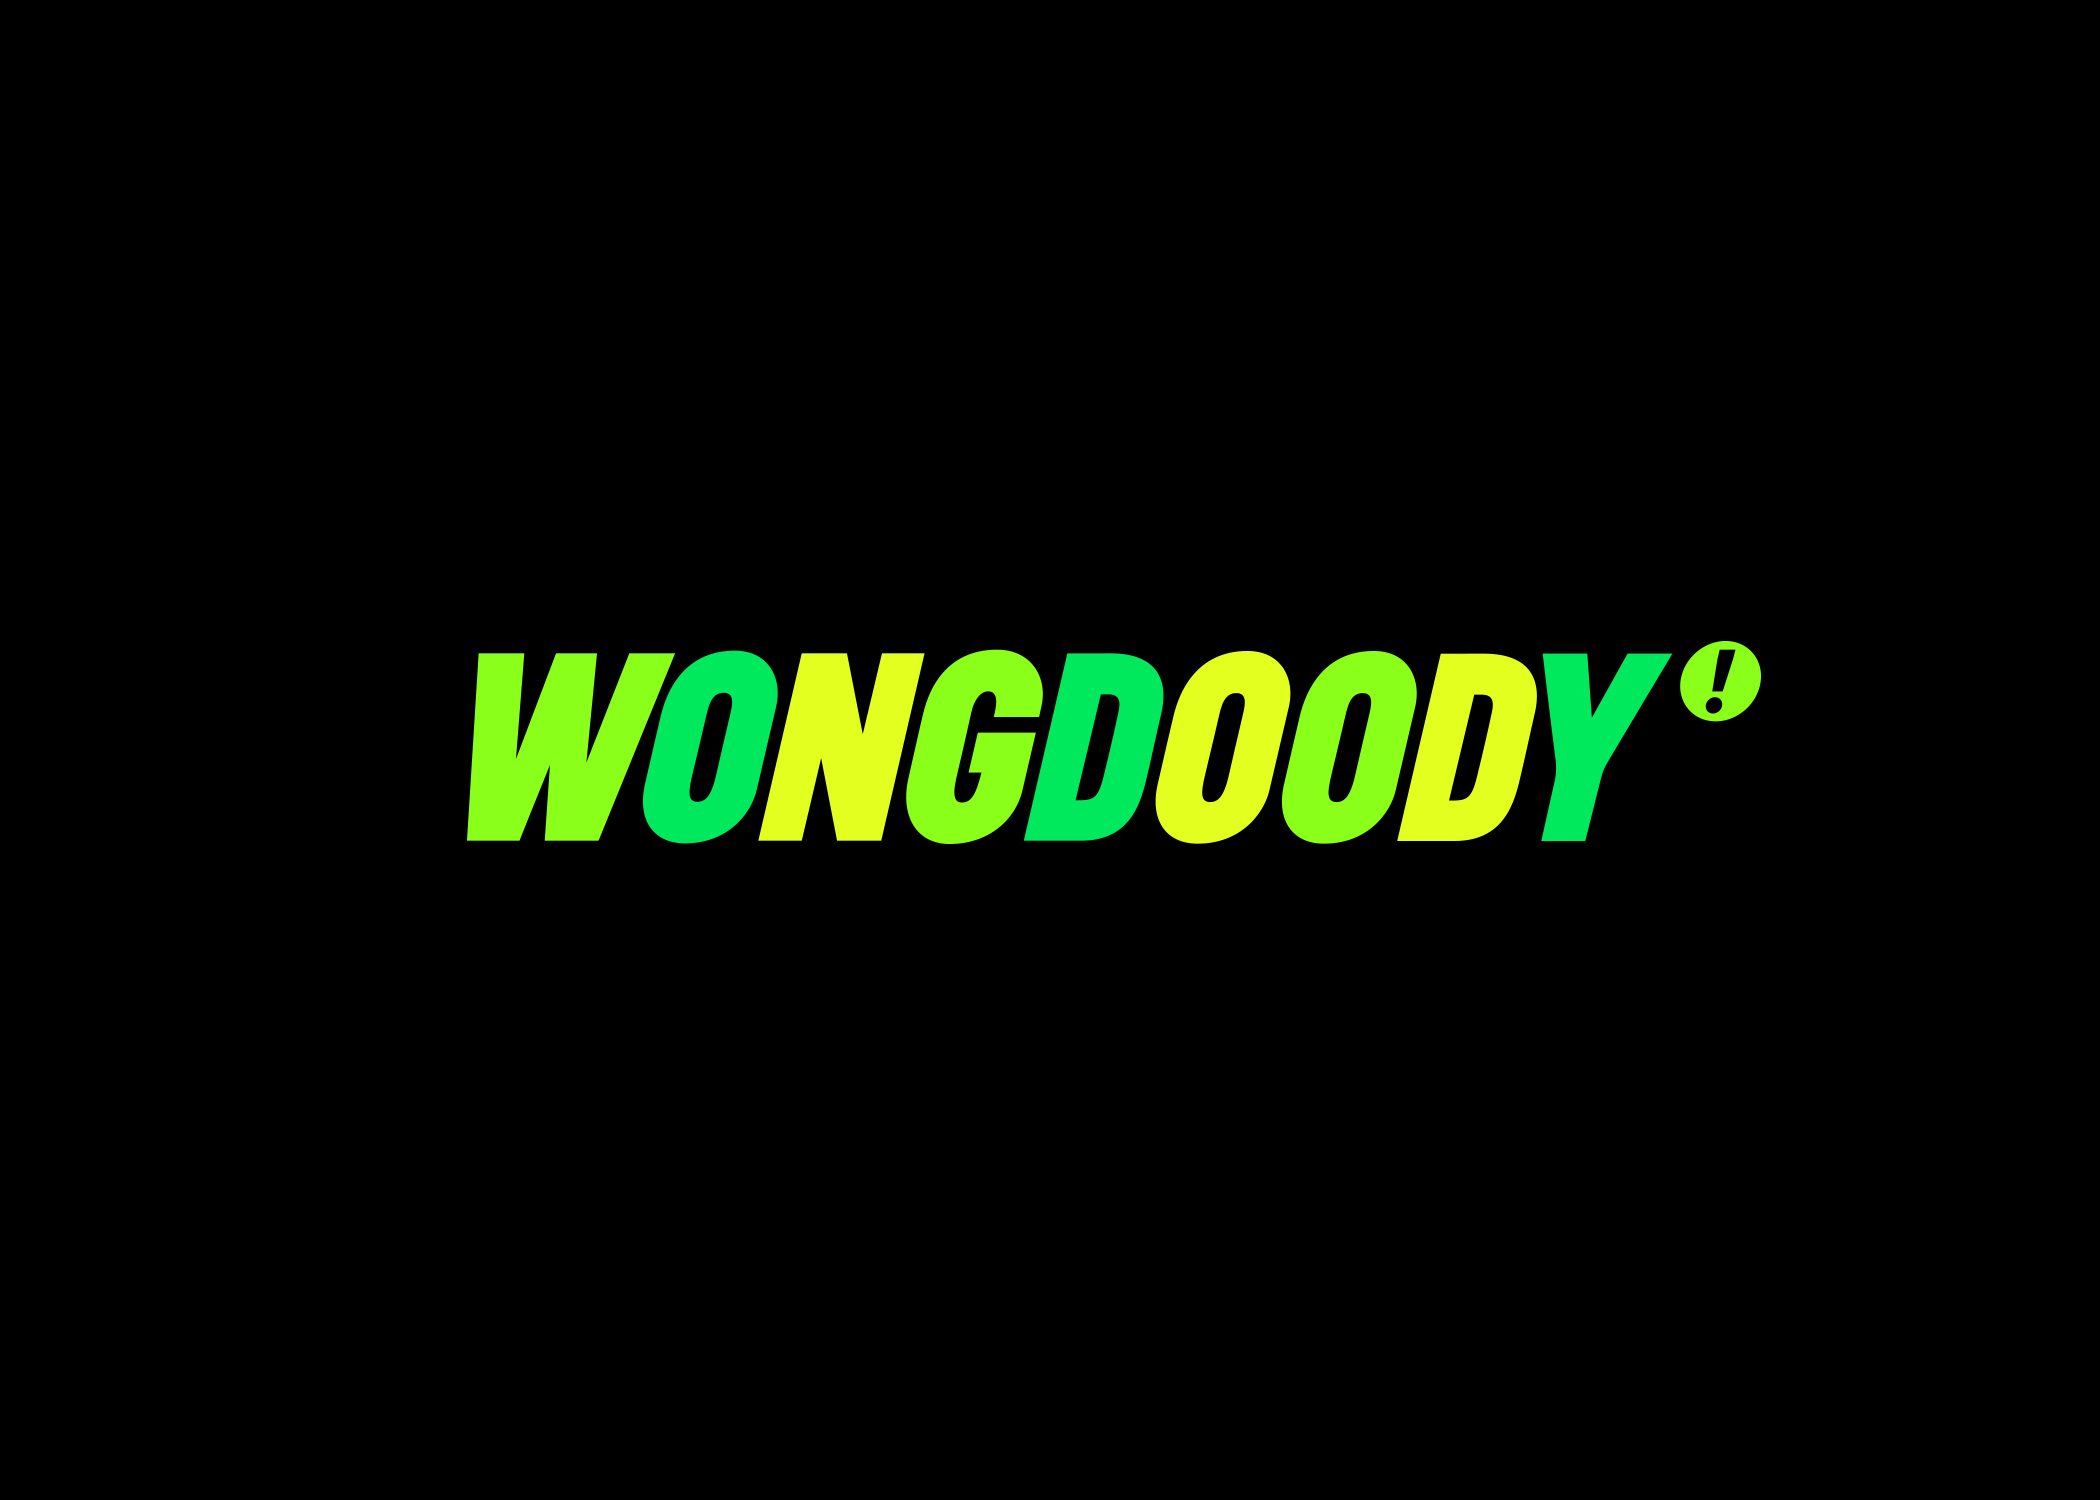 wongdoody_logo.jpg